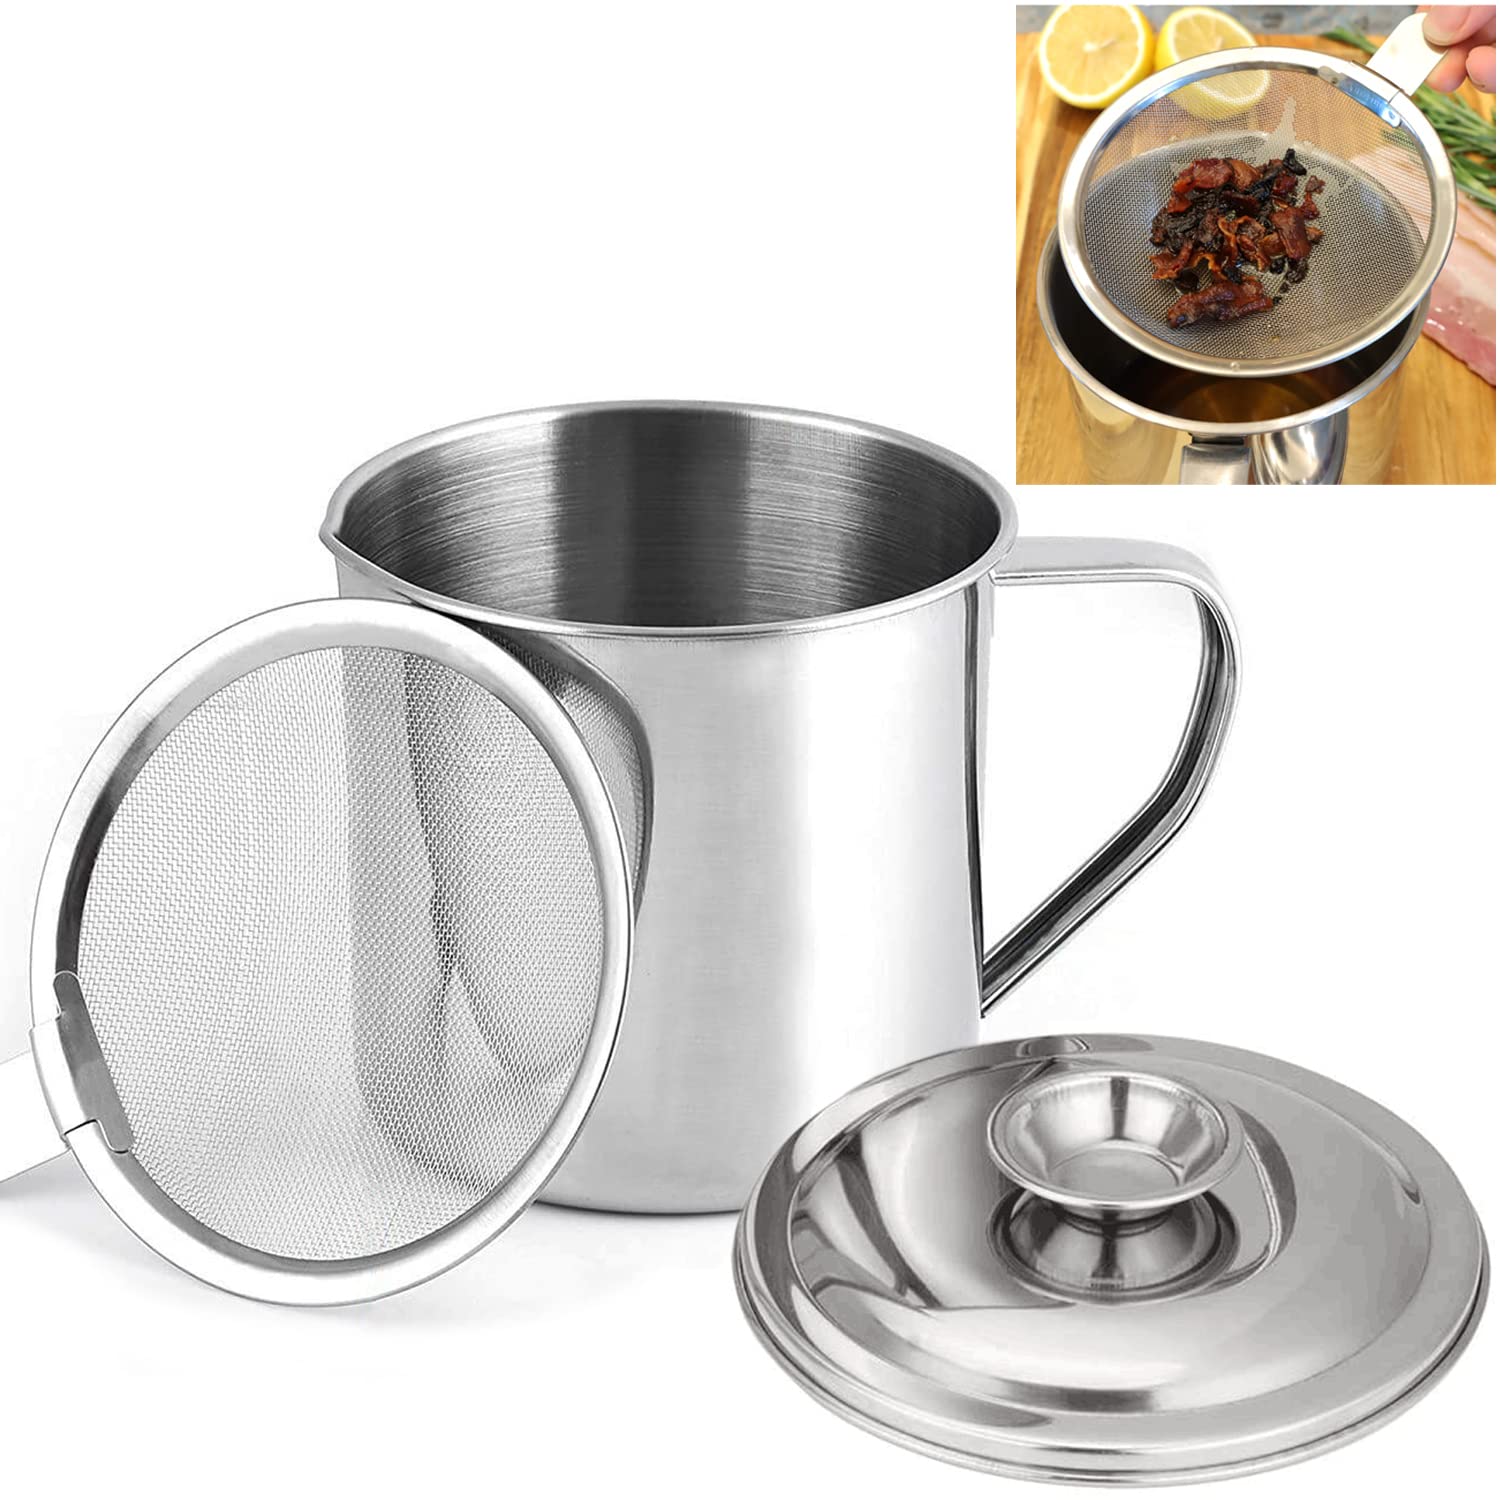 FyneChef hot pot ladle set hot pot spoon hot pot strainer scoops hot pot  accessories kit